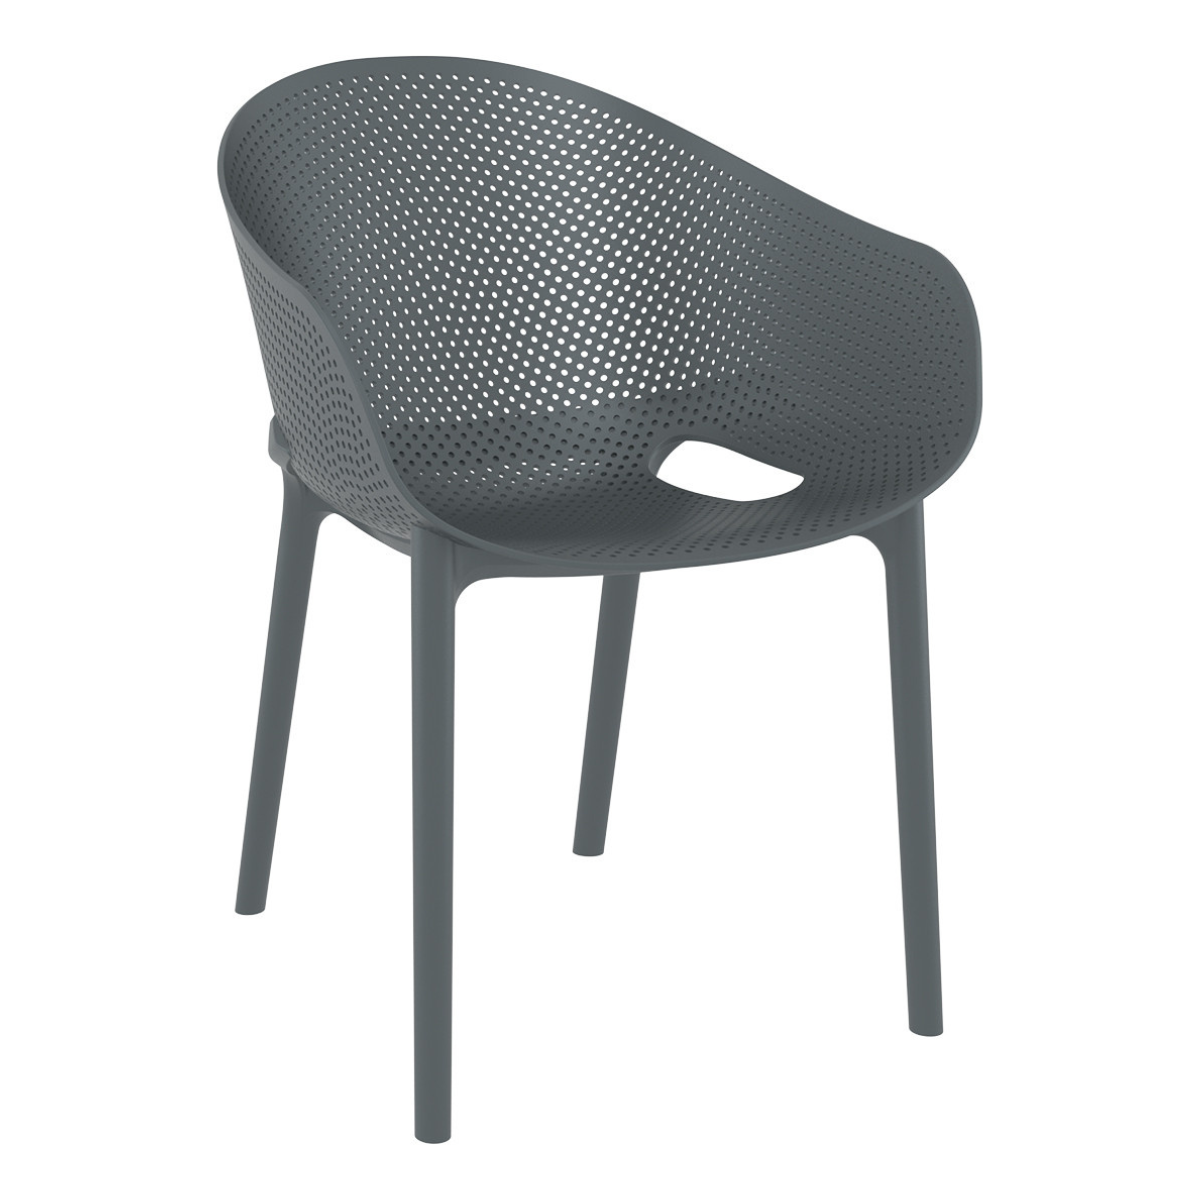 ST SKY PRO Szürke design Műanyag kültéri szék